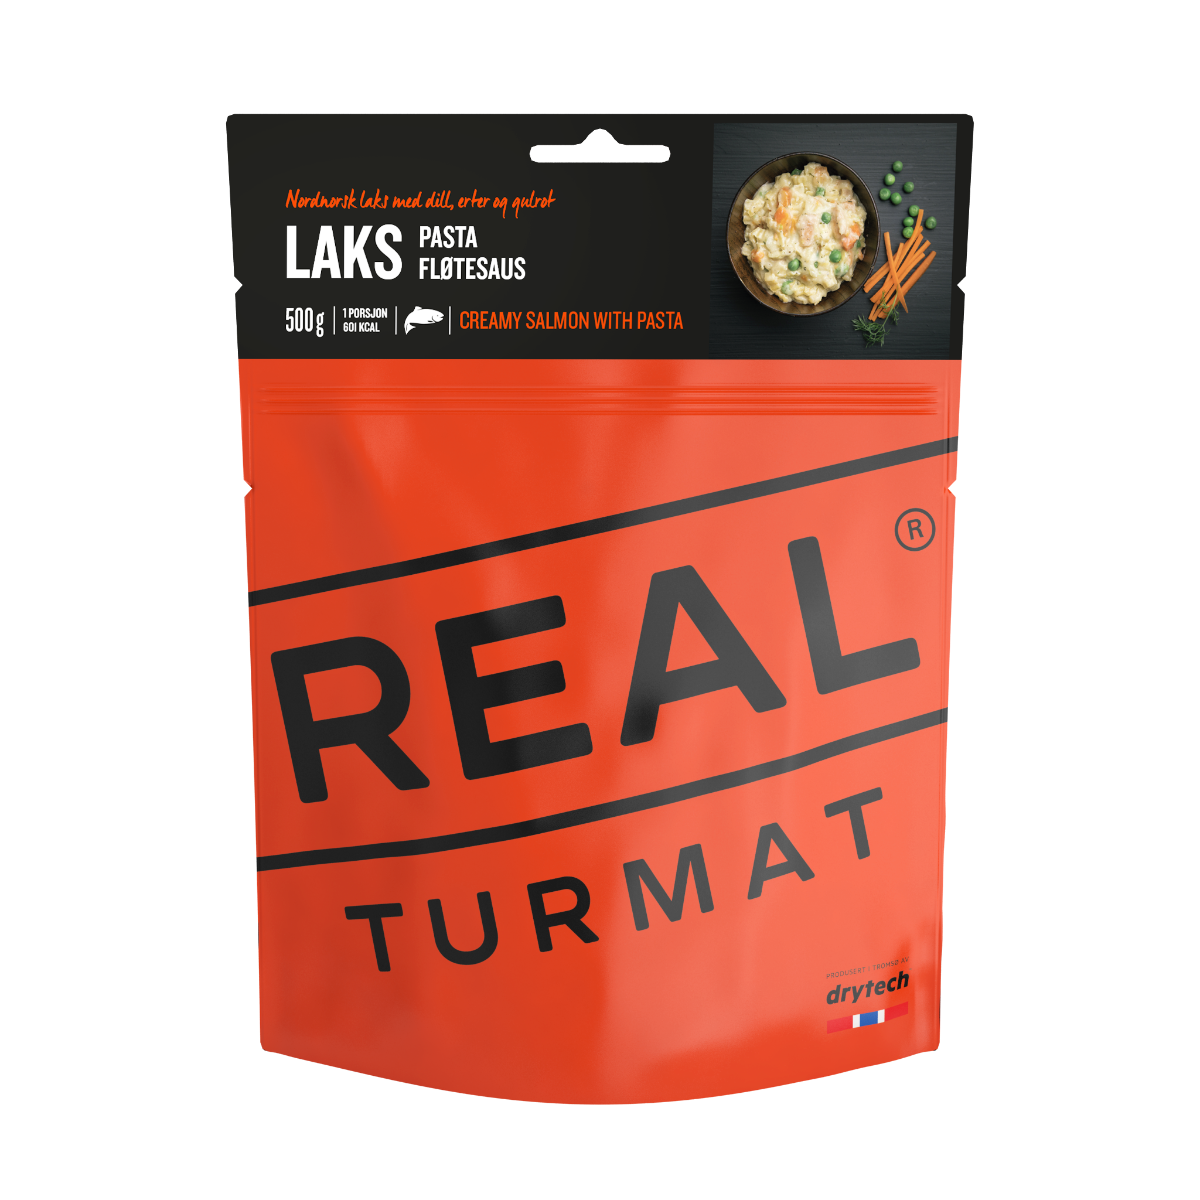 Real Turmat - Lax med pasta og flötesaus